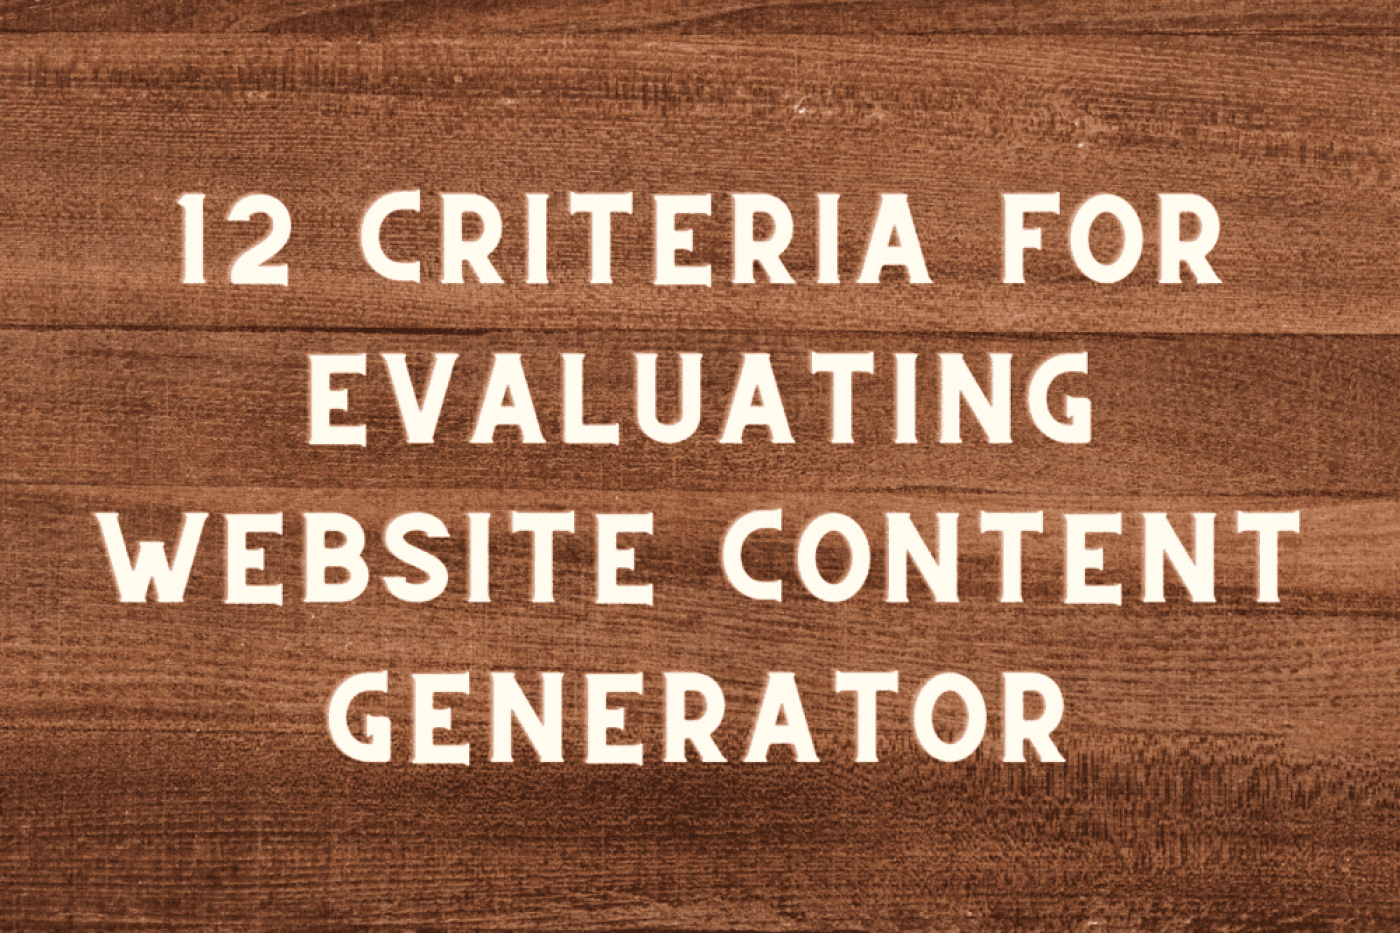 Website Content Generator Criteria